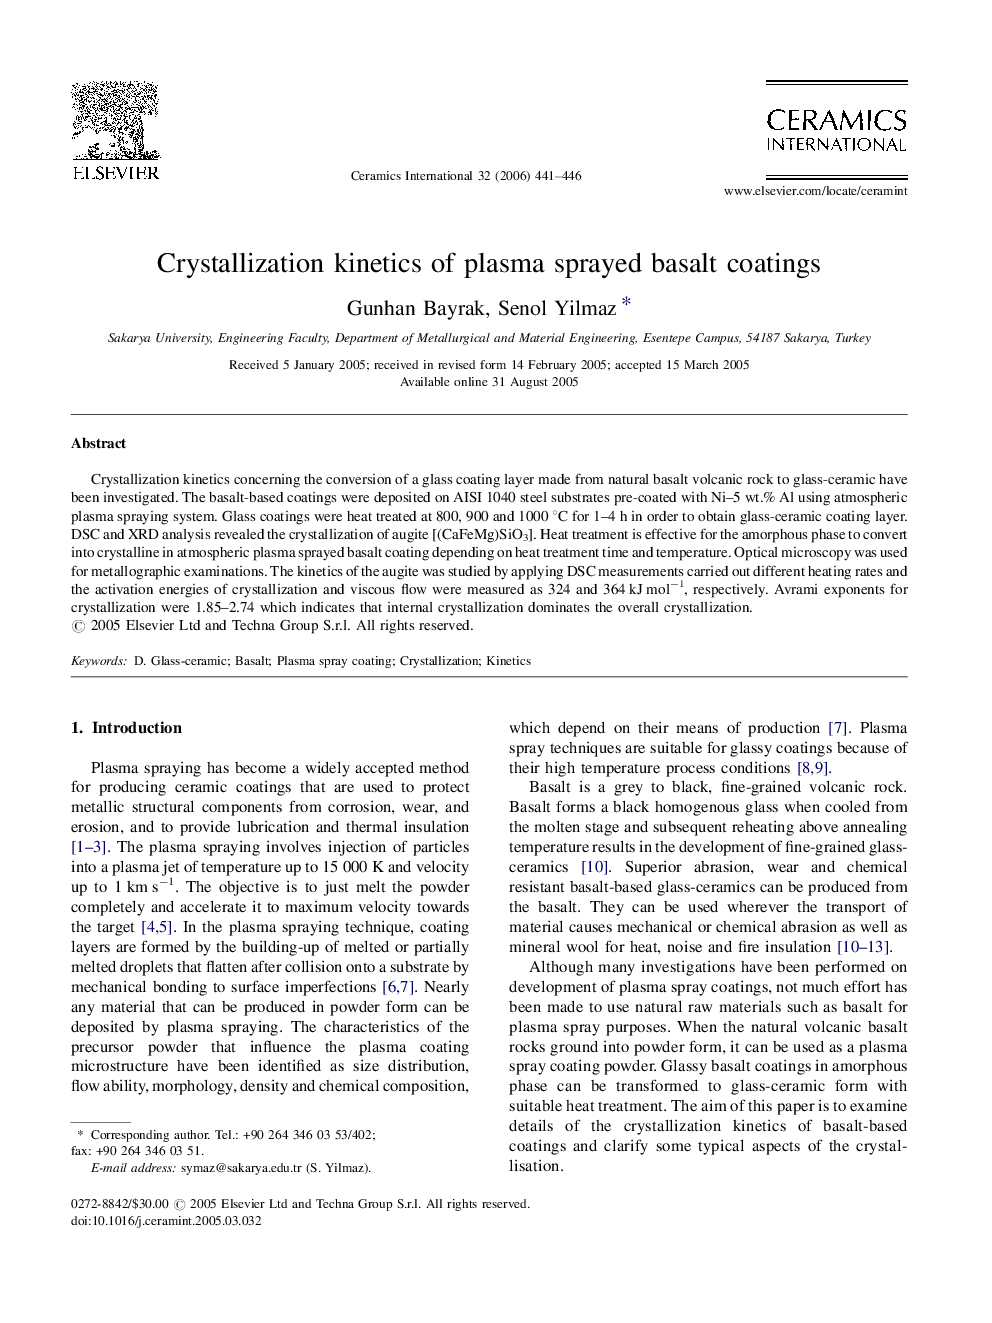 Crystallization kinetics of plasma sprayed basalt coatings